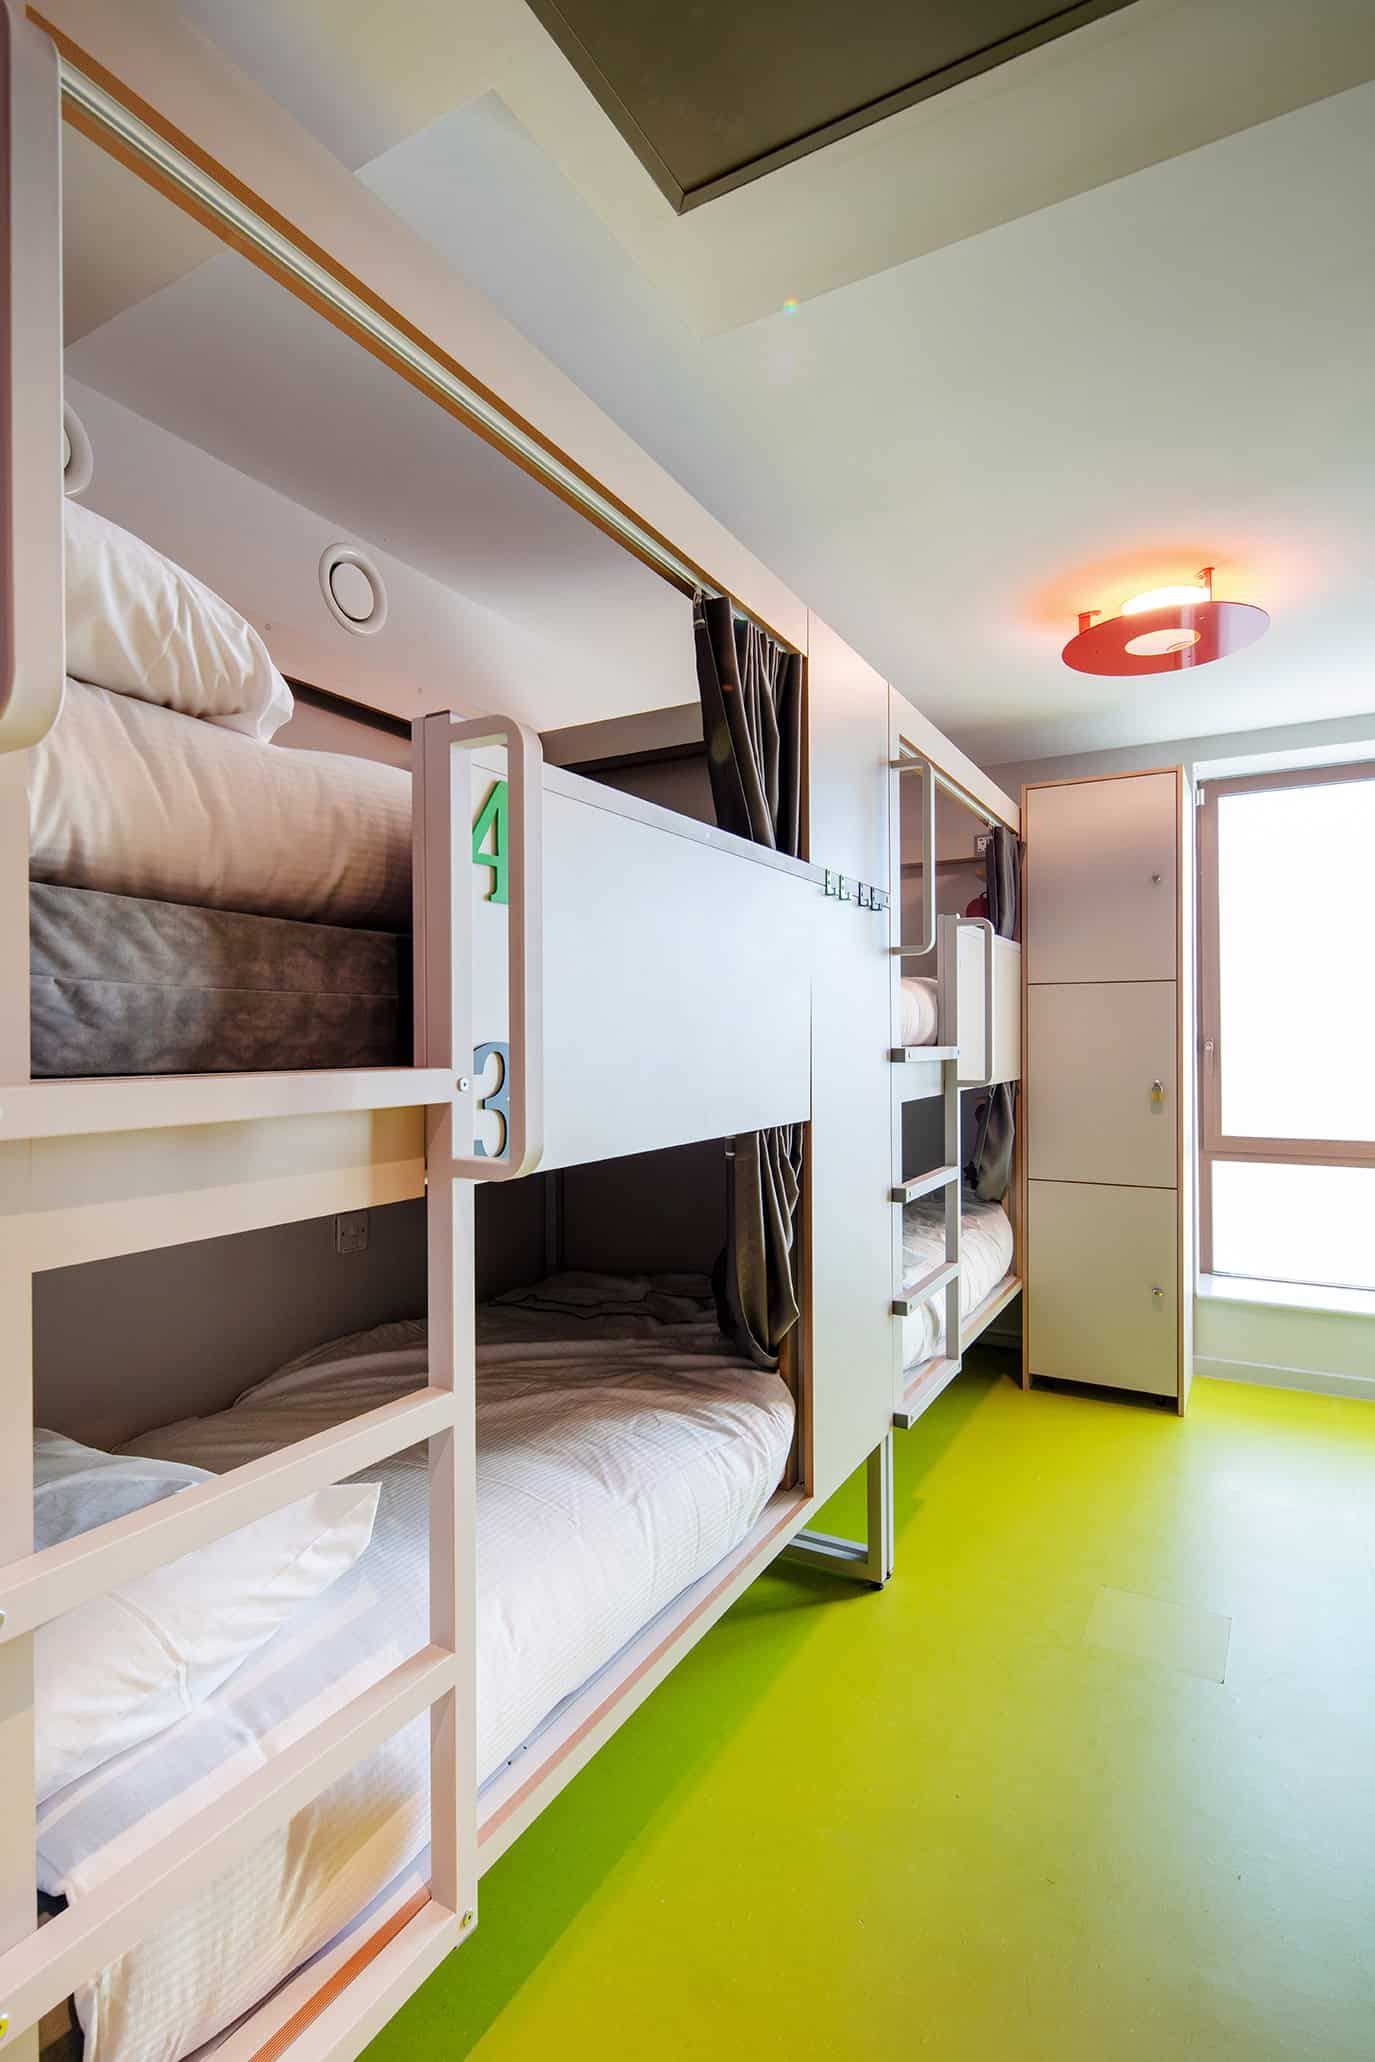 Clink i Lar dorm room with bunkbeds in Dublin 